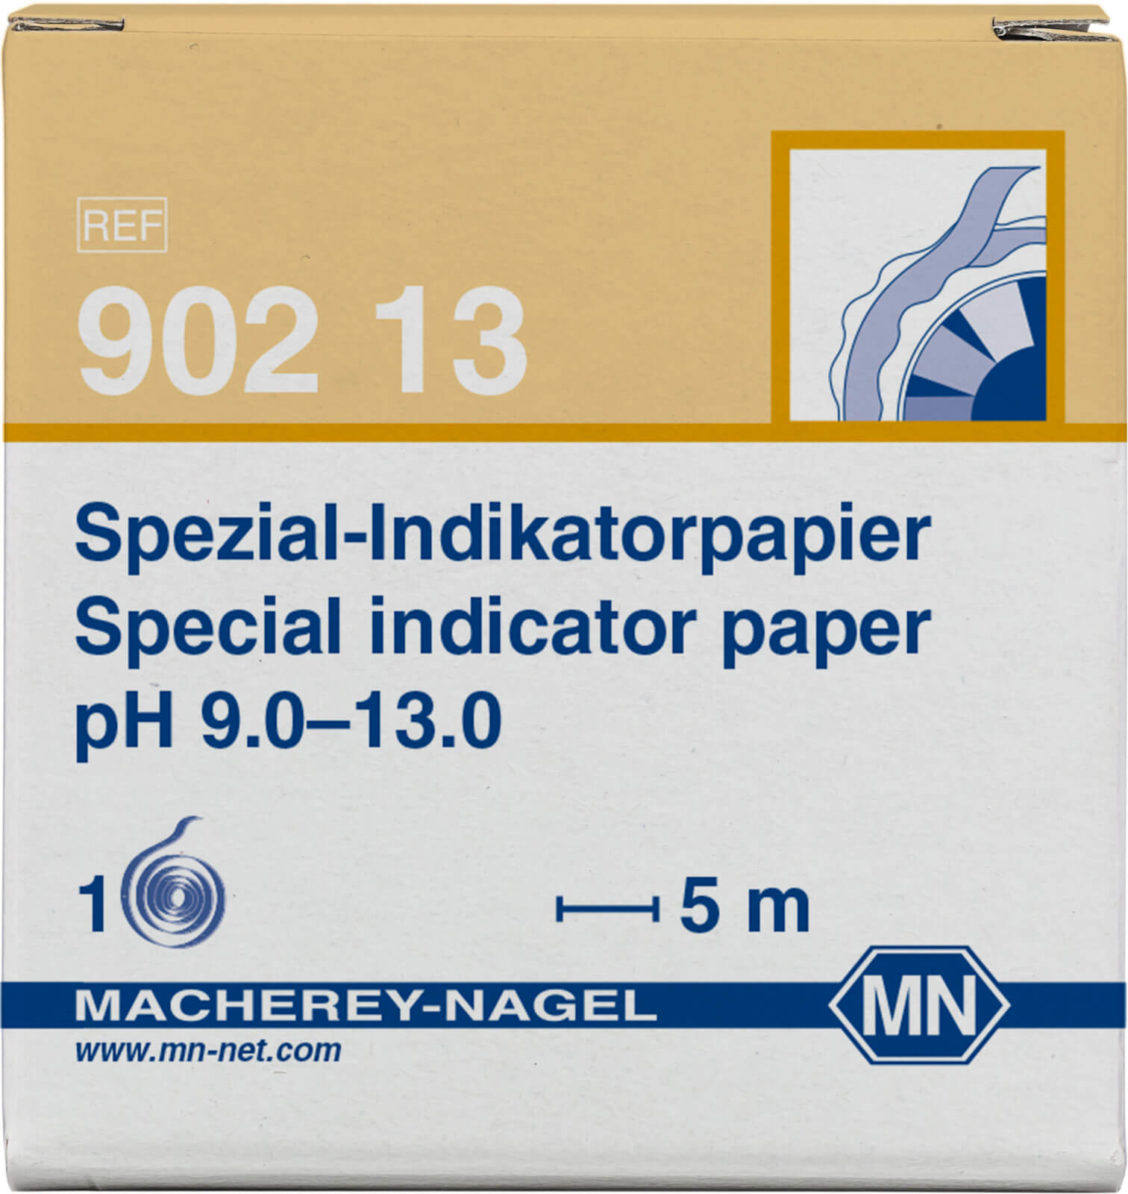 MN 90213 spesial indikatorpapir pH 9,0 til 13,0